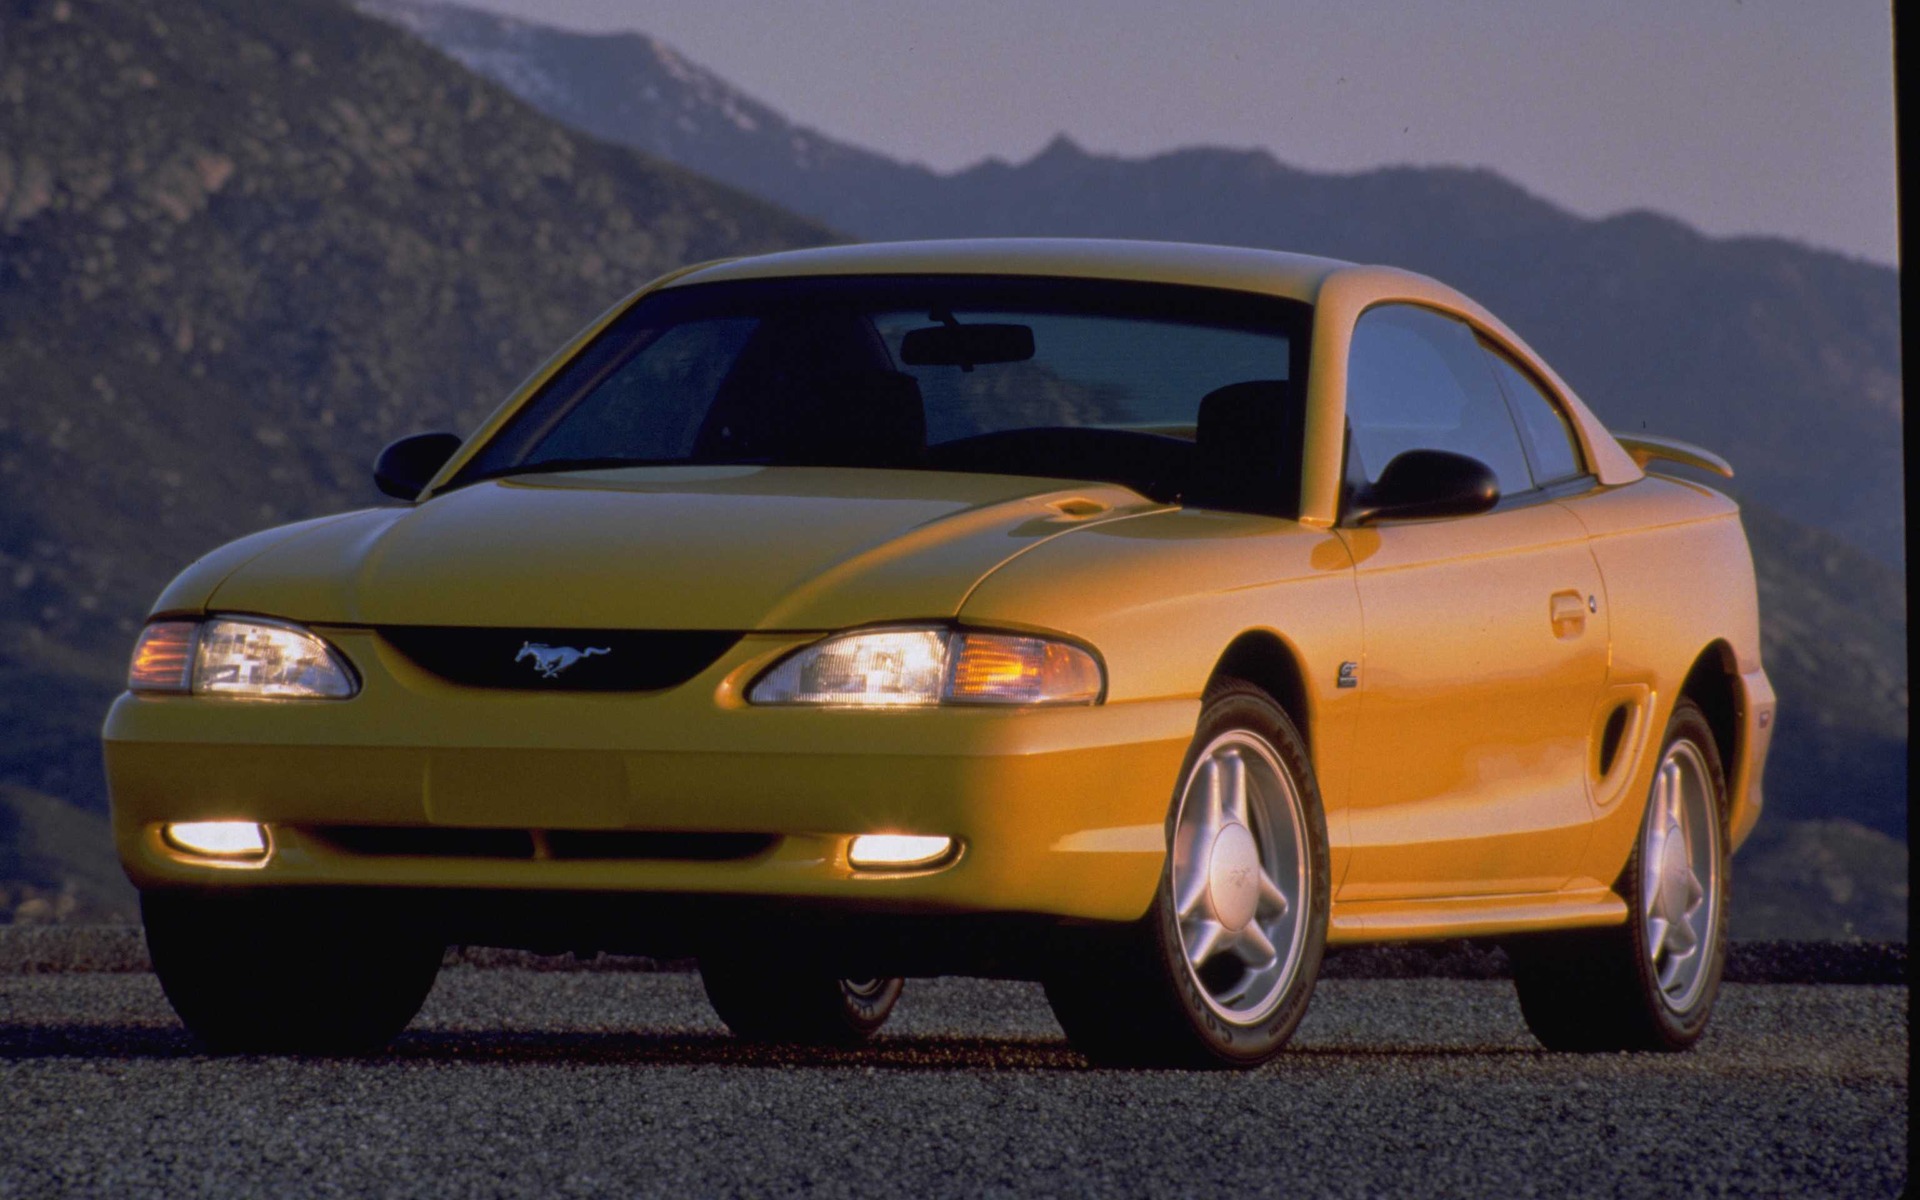 Ford Mustang 1994, première année de la troisième génération